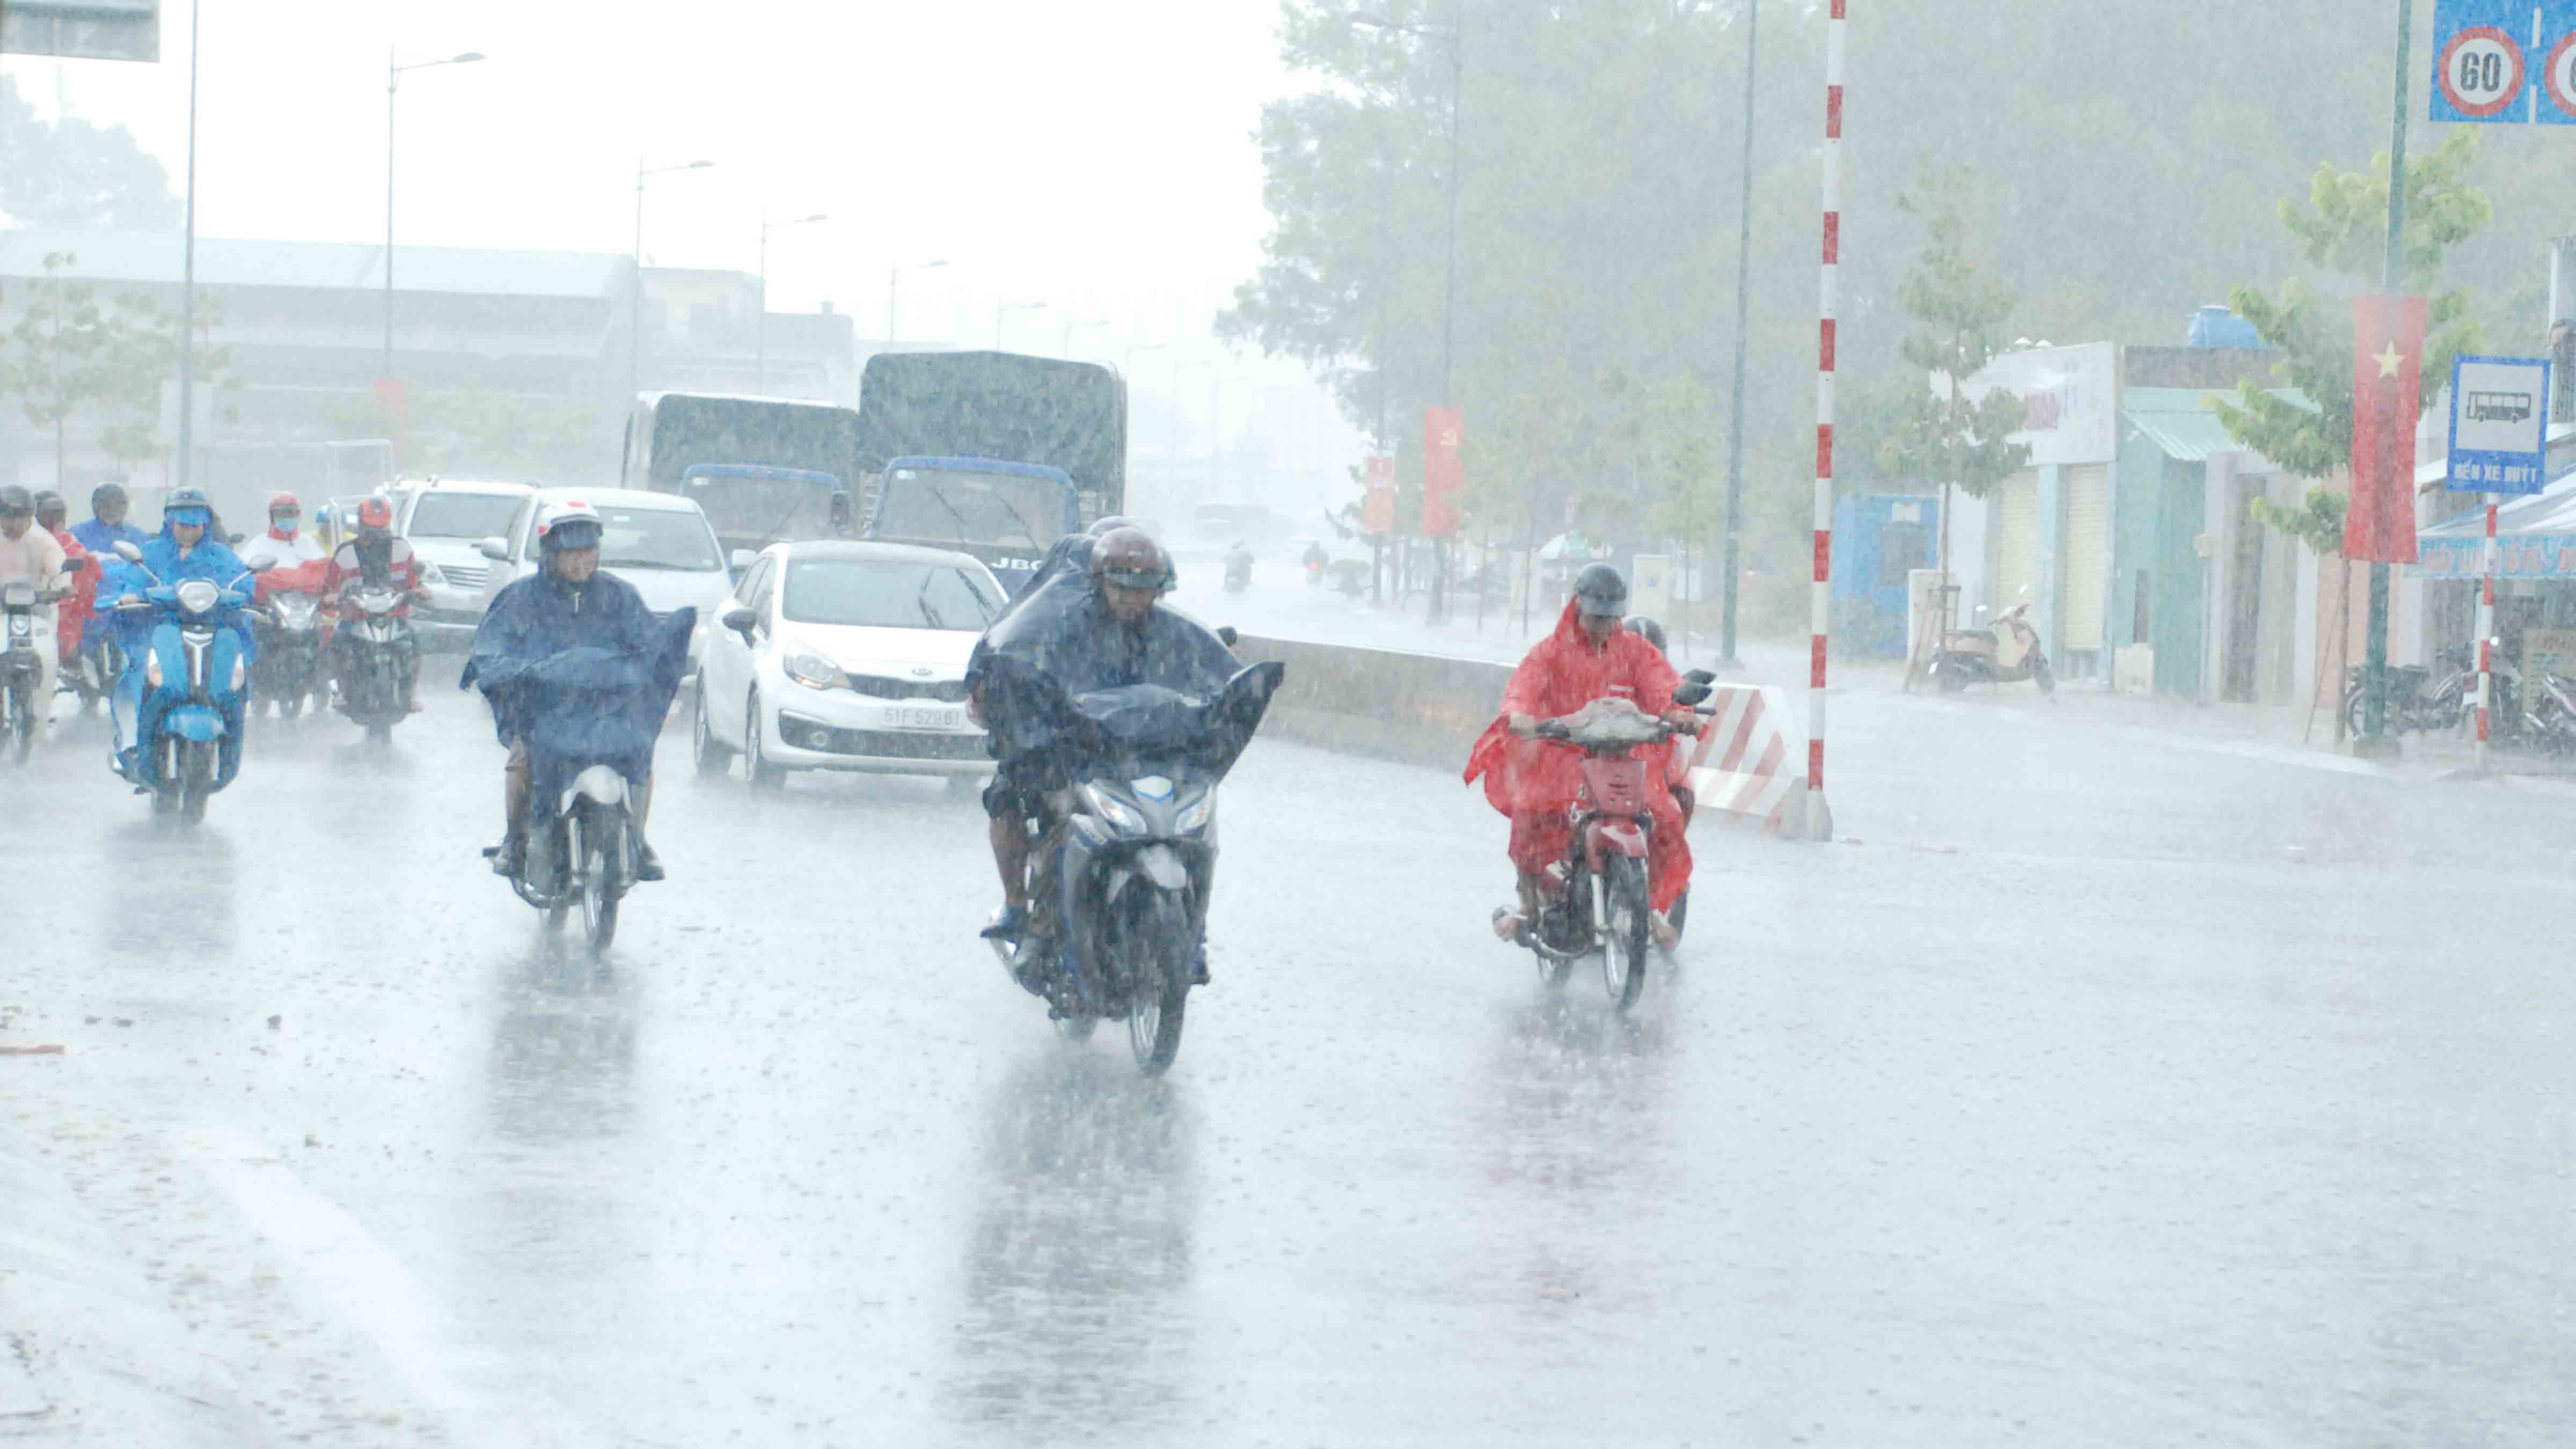 Nhiều người lùng bùng áo mưa đi lại giữa mưa lớn trên đường Phạm Văn  Đồng - Ảnh: An Huy